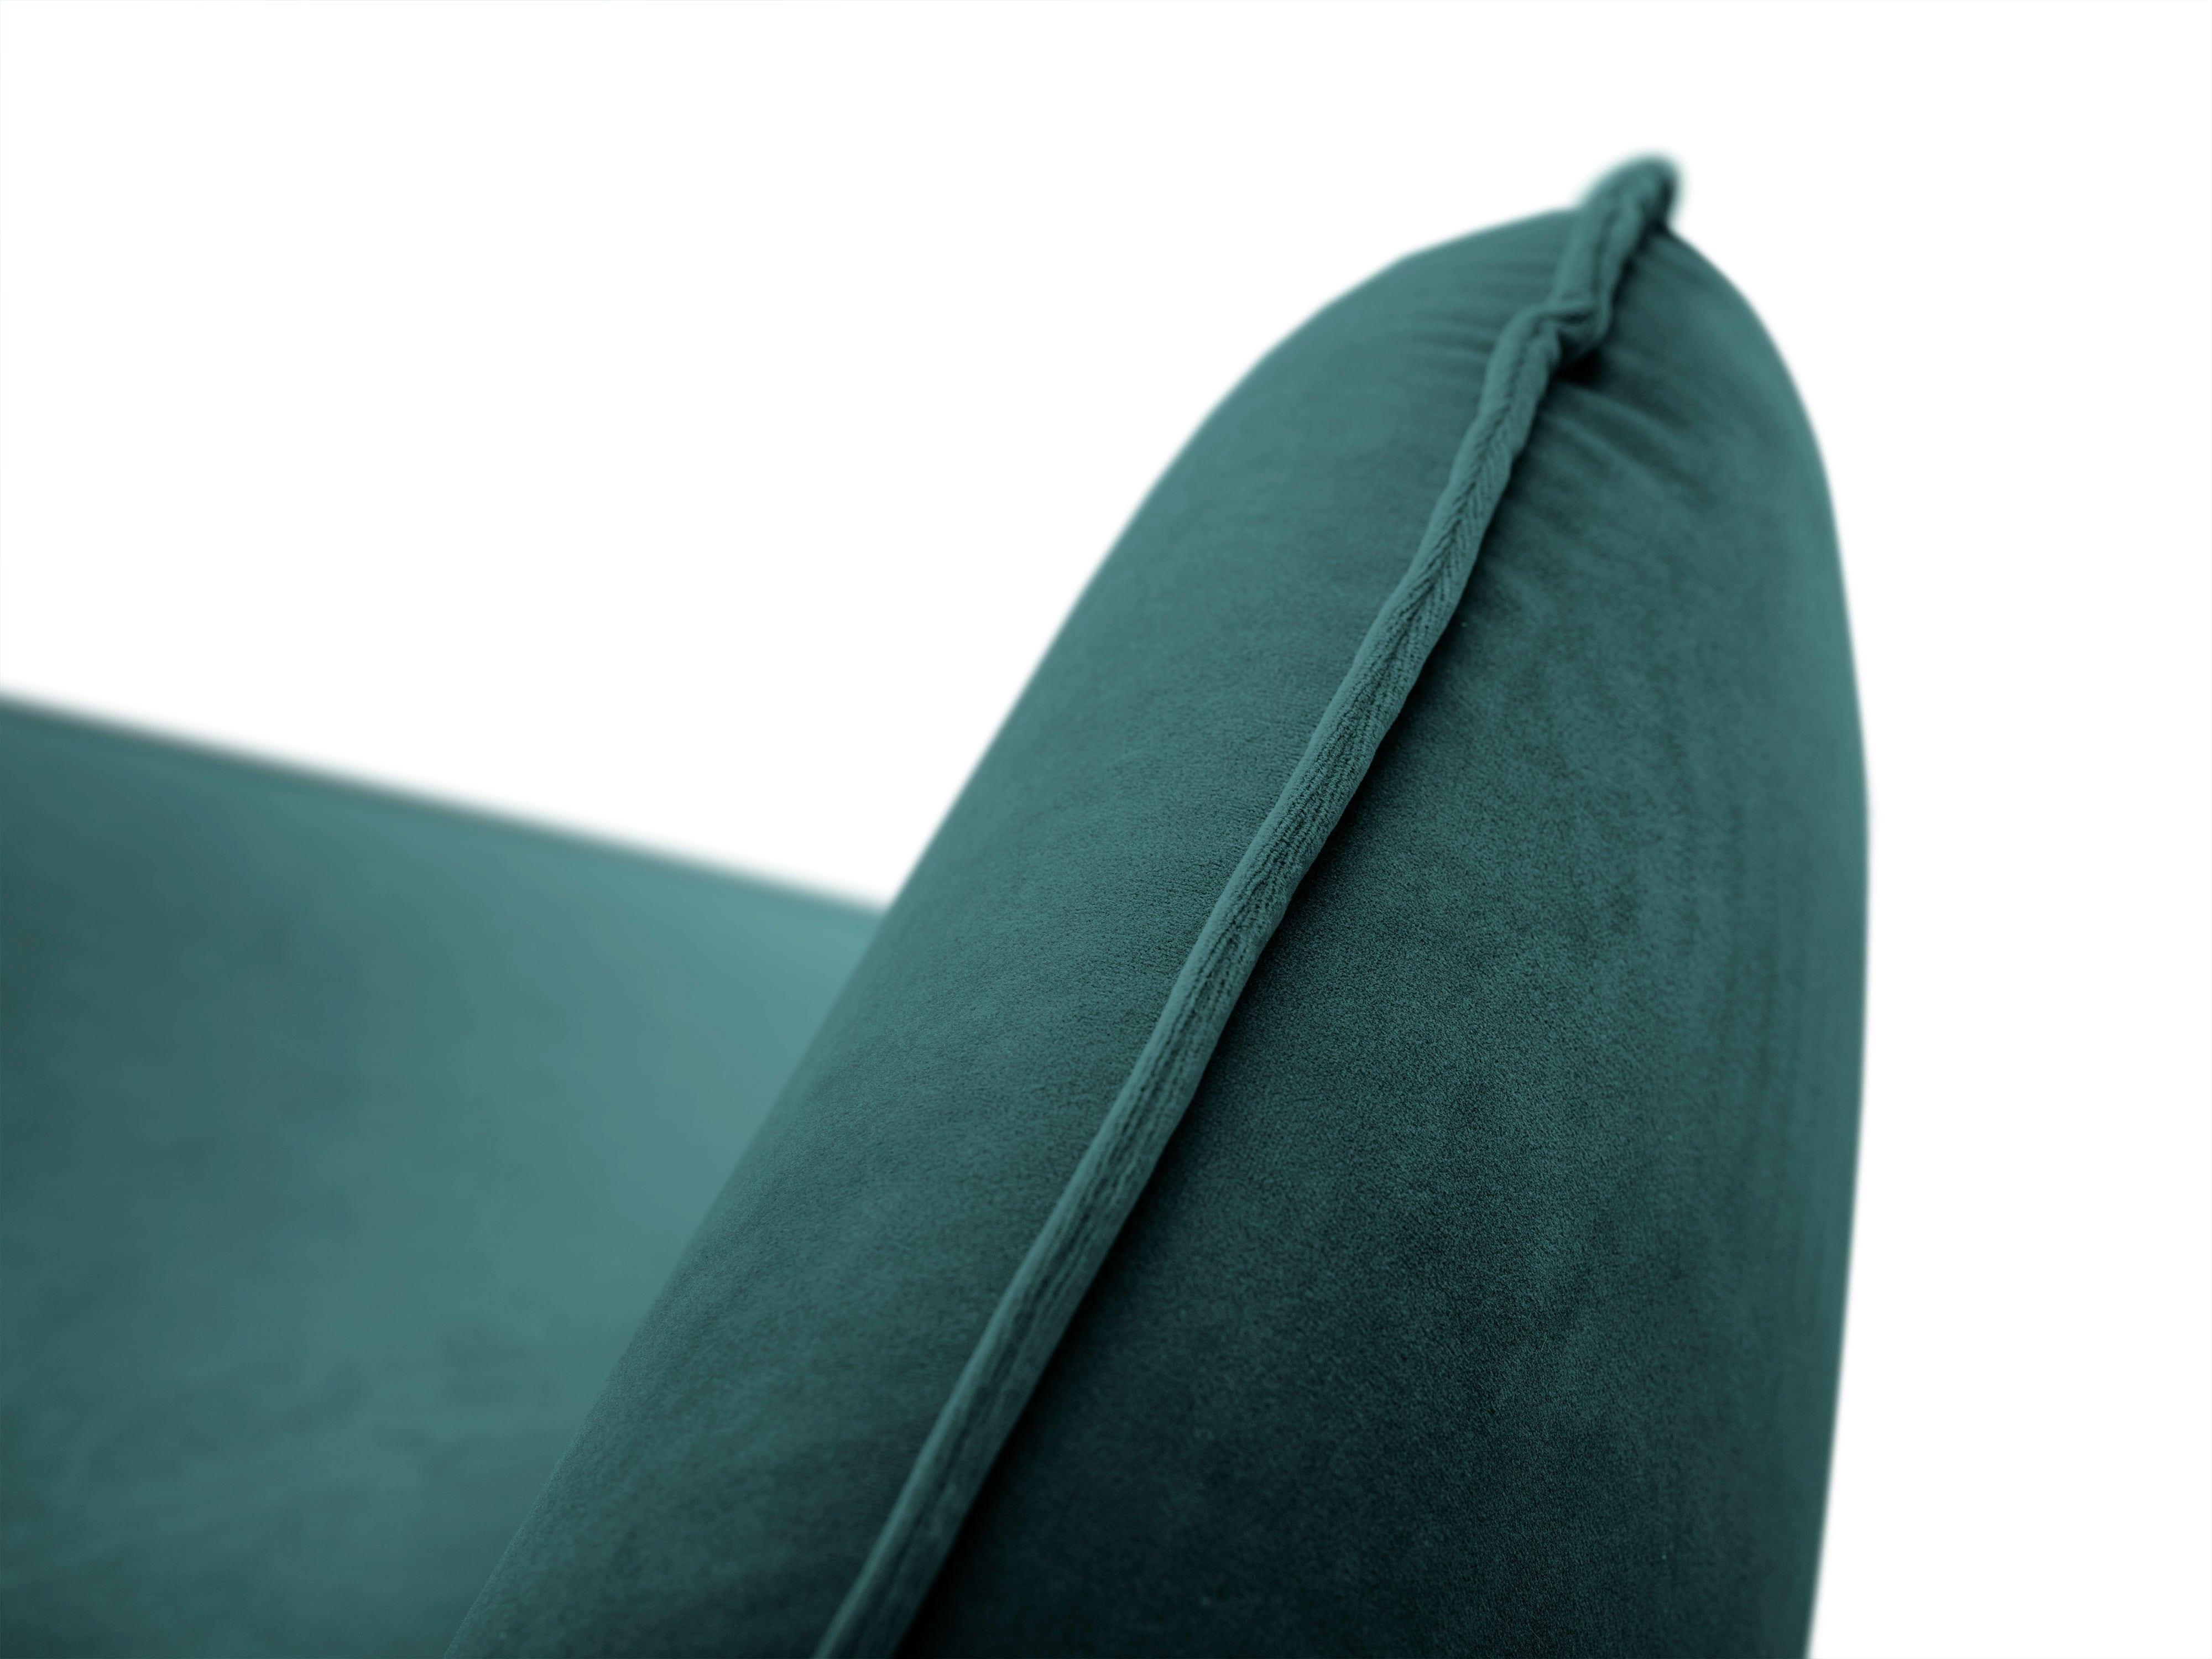 Sofa aksamitna 2-osobowa VIENNA morski z czarną podstawą Cosmopolitan Design    Eye on Design